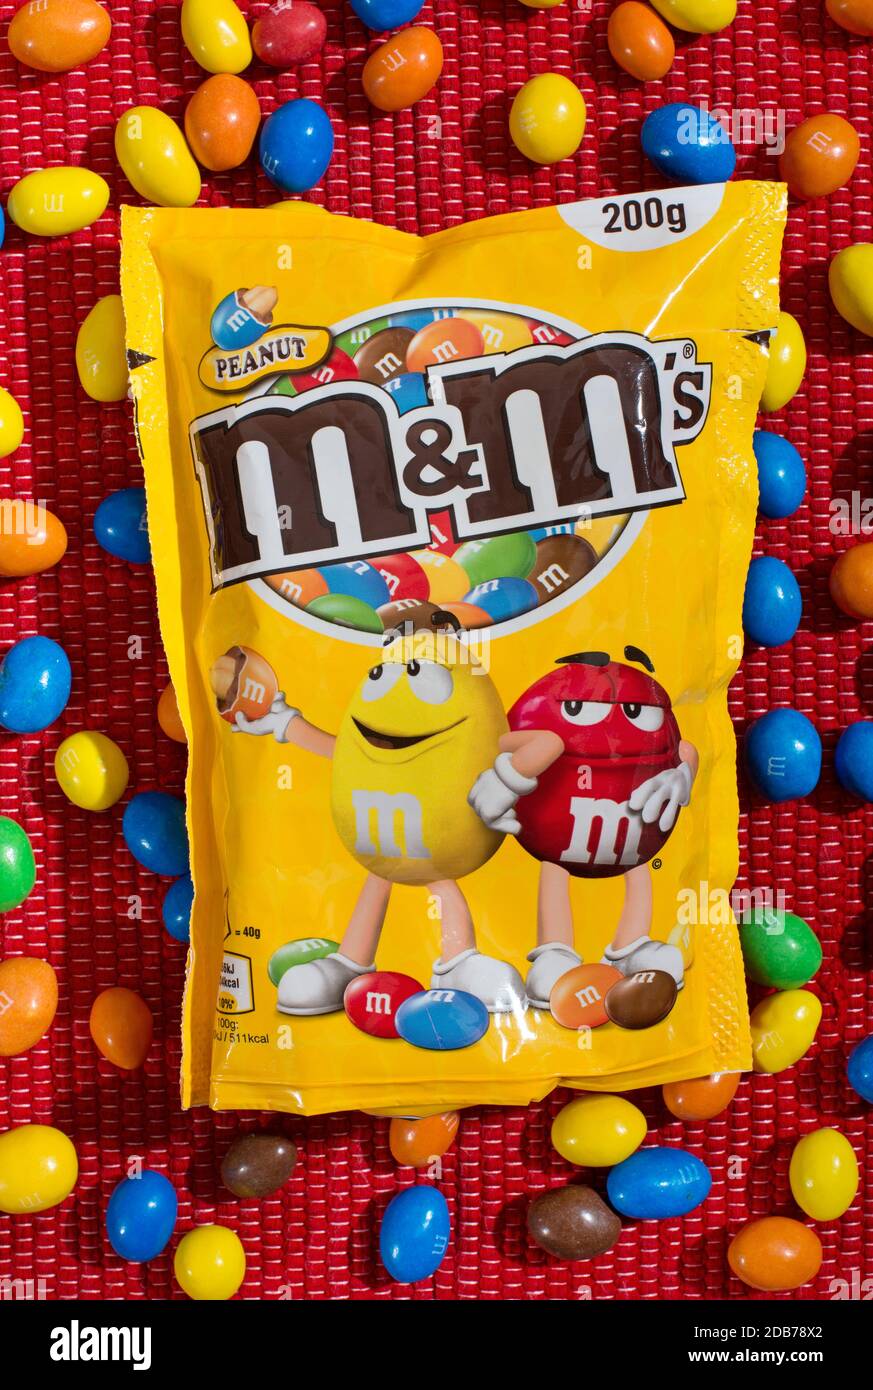 M&MS Retail Verpackung mit losen bunten Süßigkeiten in einer Wohnung Legen Sie Stillleben auf einem roten textilen Hintergrund Stockfoto